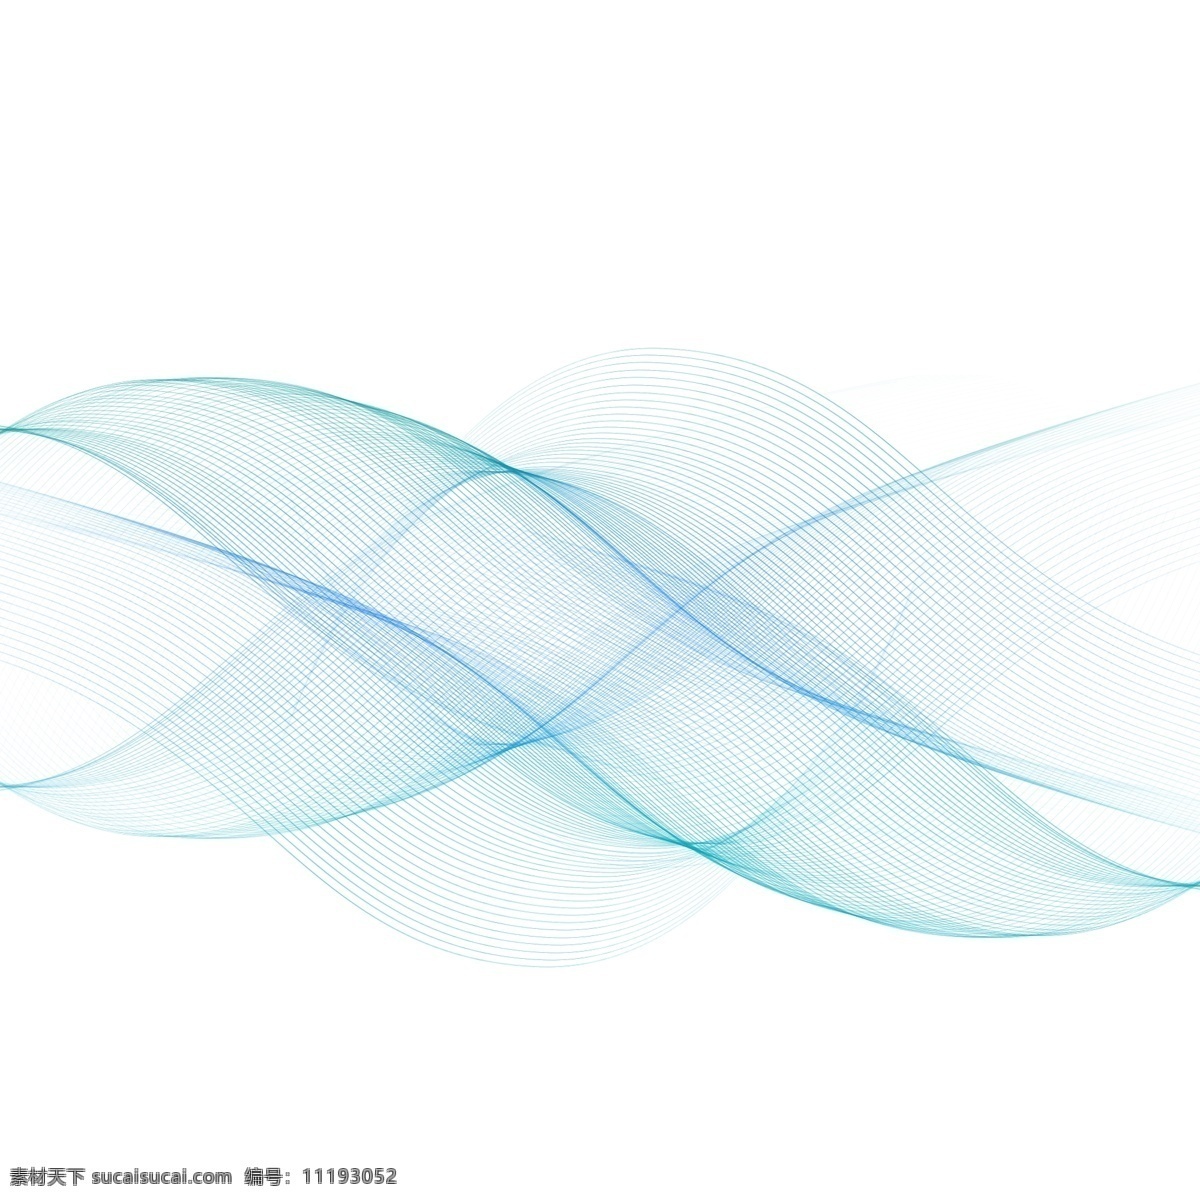 曲线 风 流线 线条 科技 企业 画册 海报 banner 装饰 风效果 吹风效果 动感 抽象 装饰图案 素材图